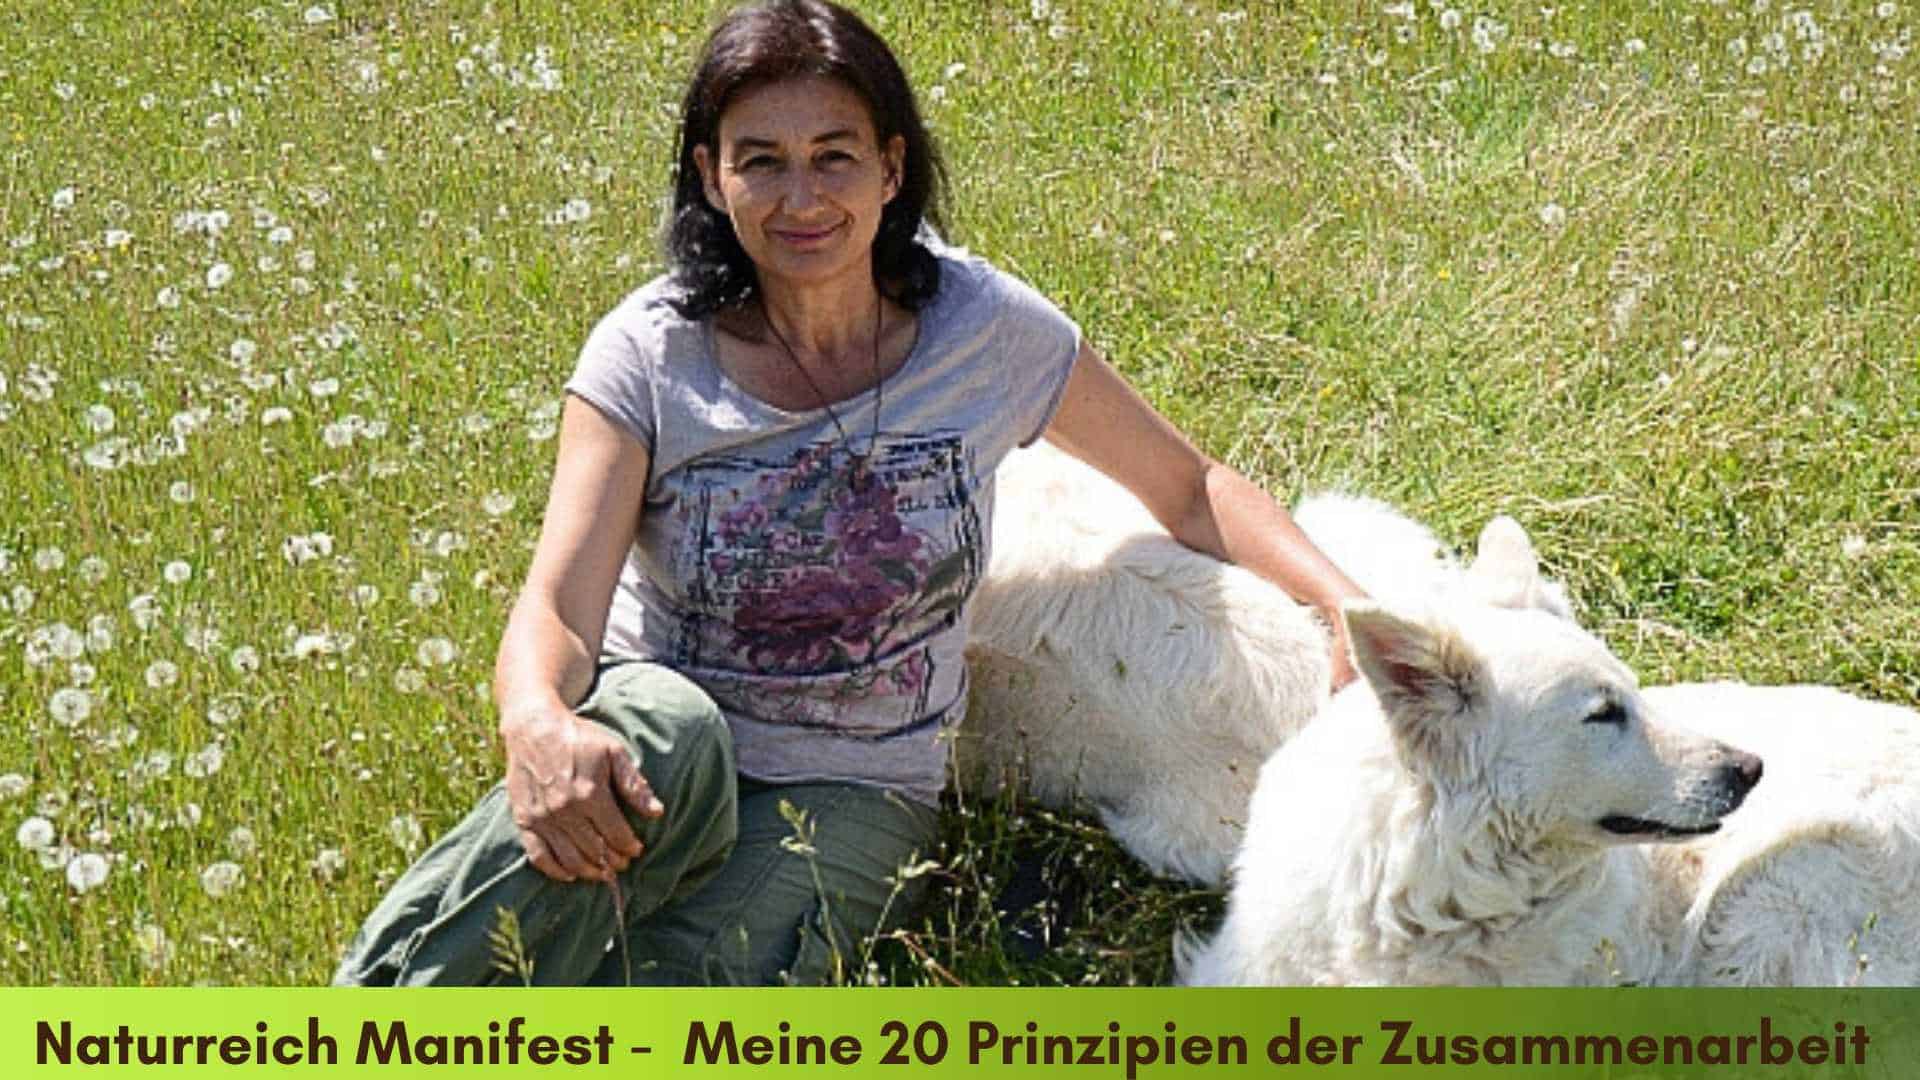 Marianne auf der Koppel im Gras sitzend mit den Hunden und dem Kater